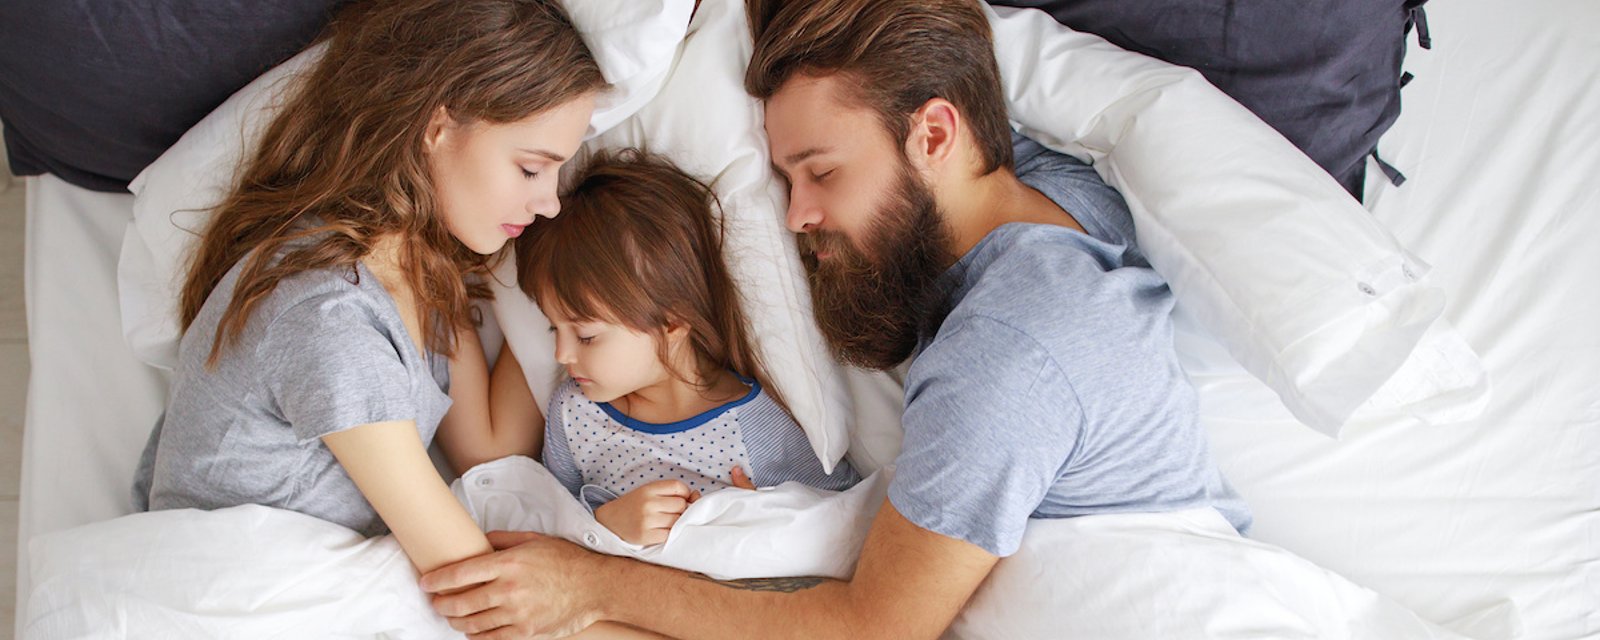 La science a démontré que les pères dorment mieux que les mères